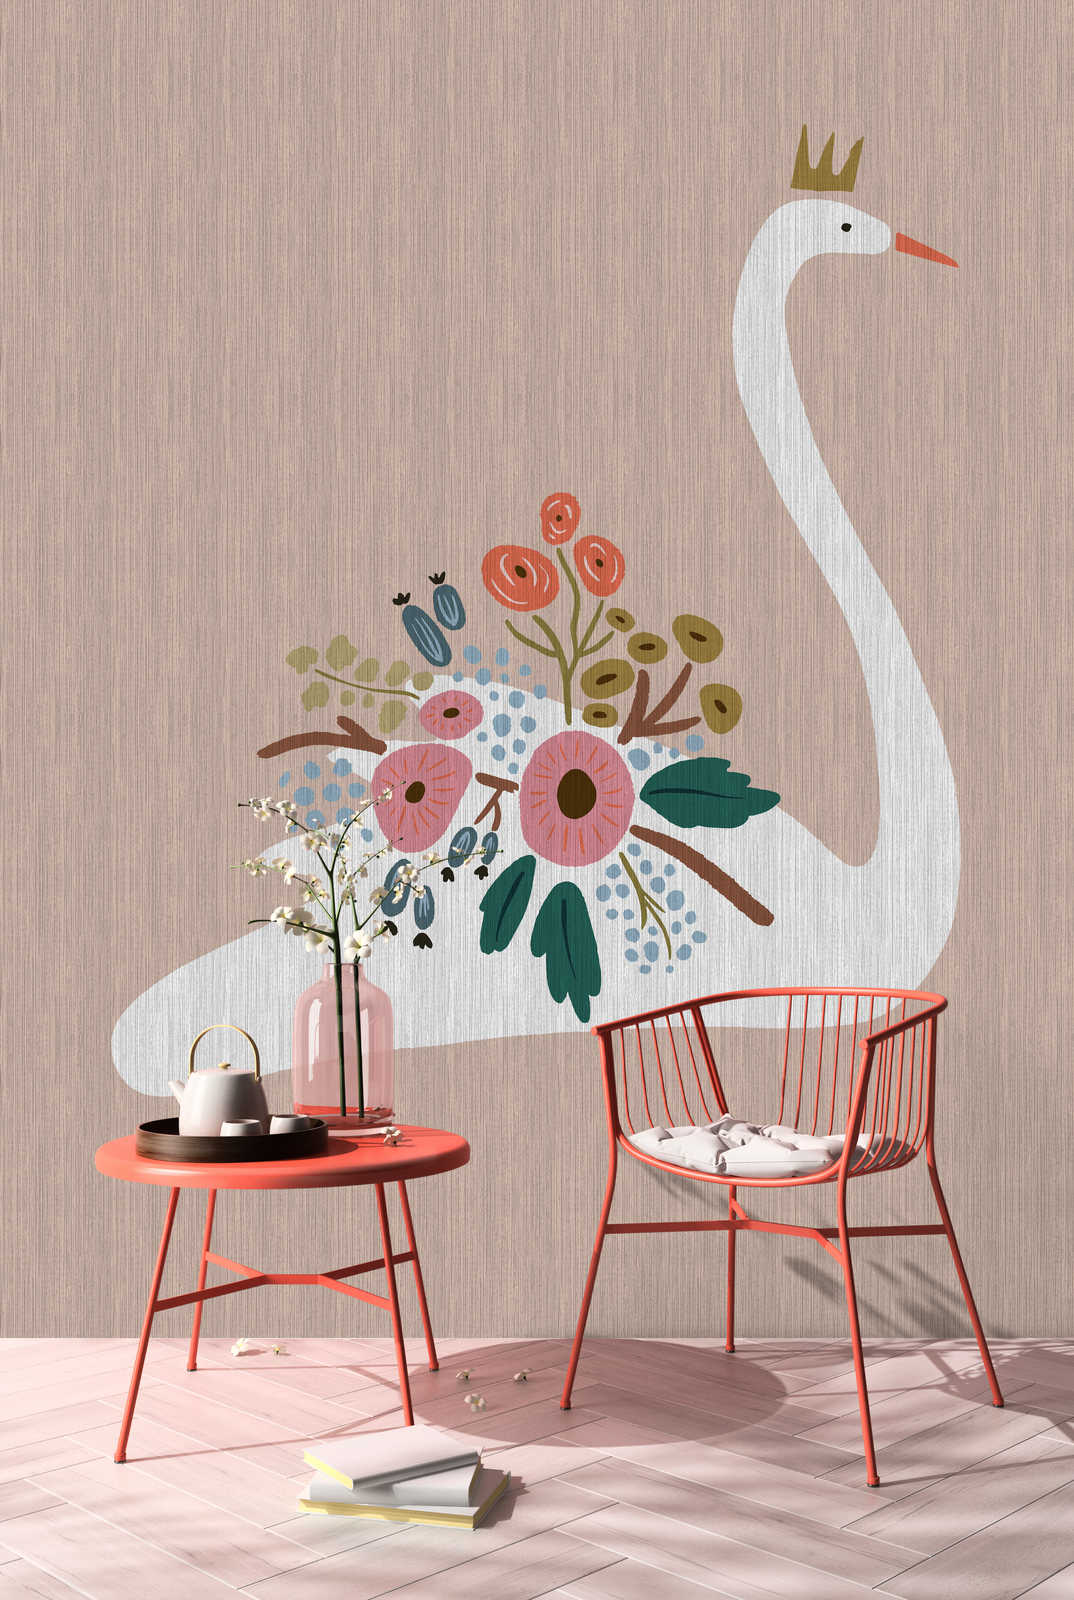             Up North 1 - Papel pintado de diseño escandinavo Swan & Flowers
        